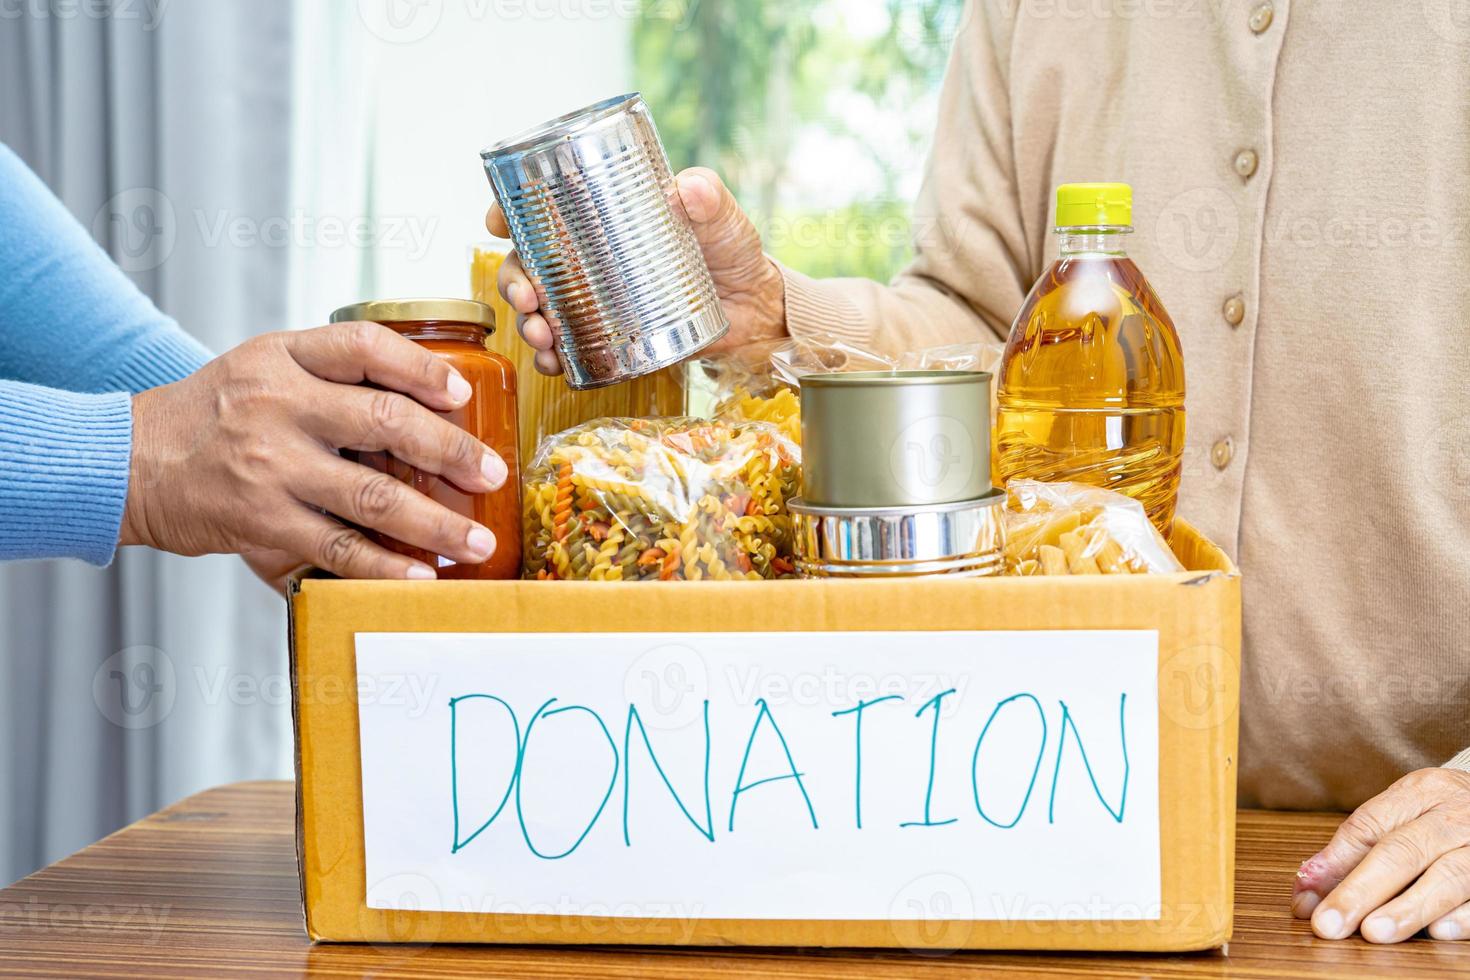 volontari che mettono vari alimenti secchi nella scatola delle donazioni per aiutare le persone. foto